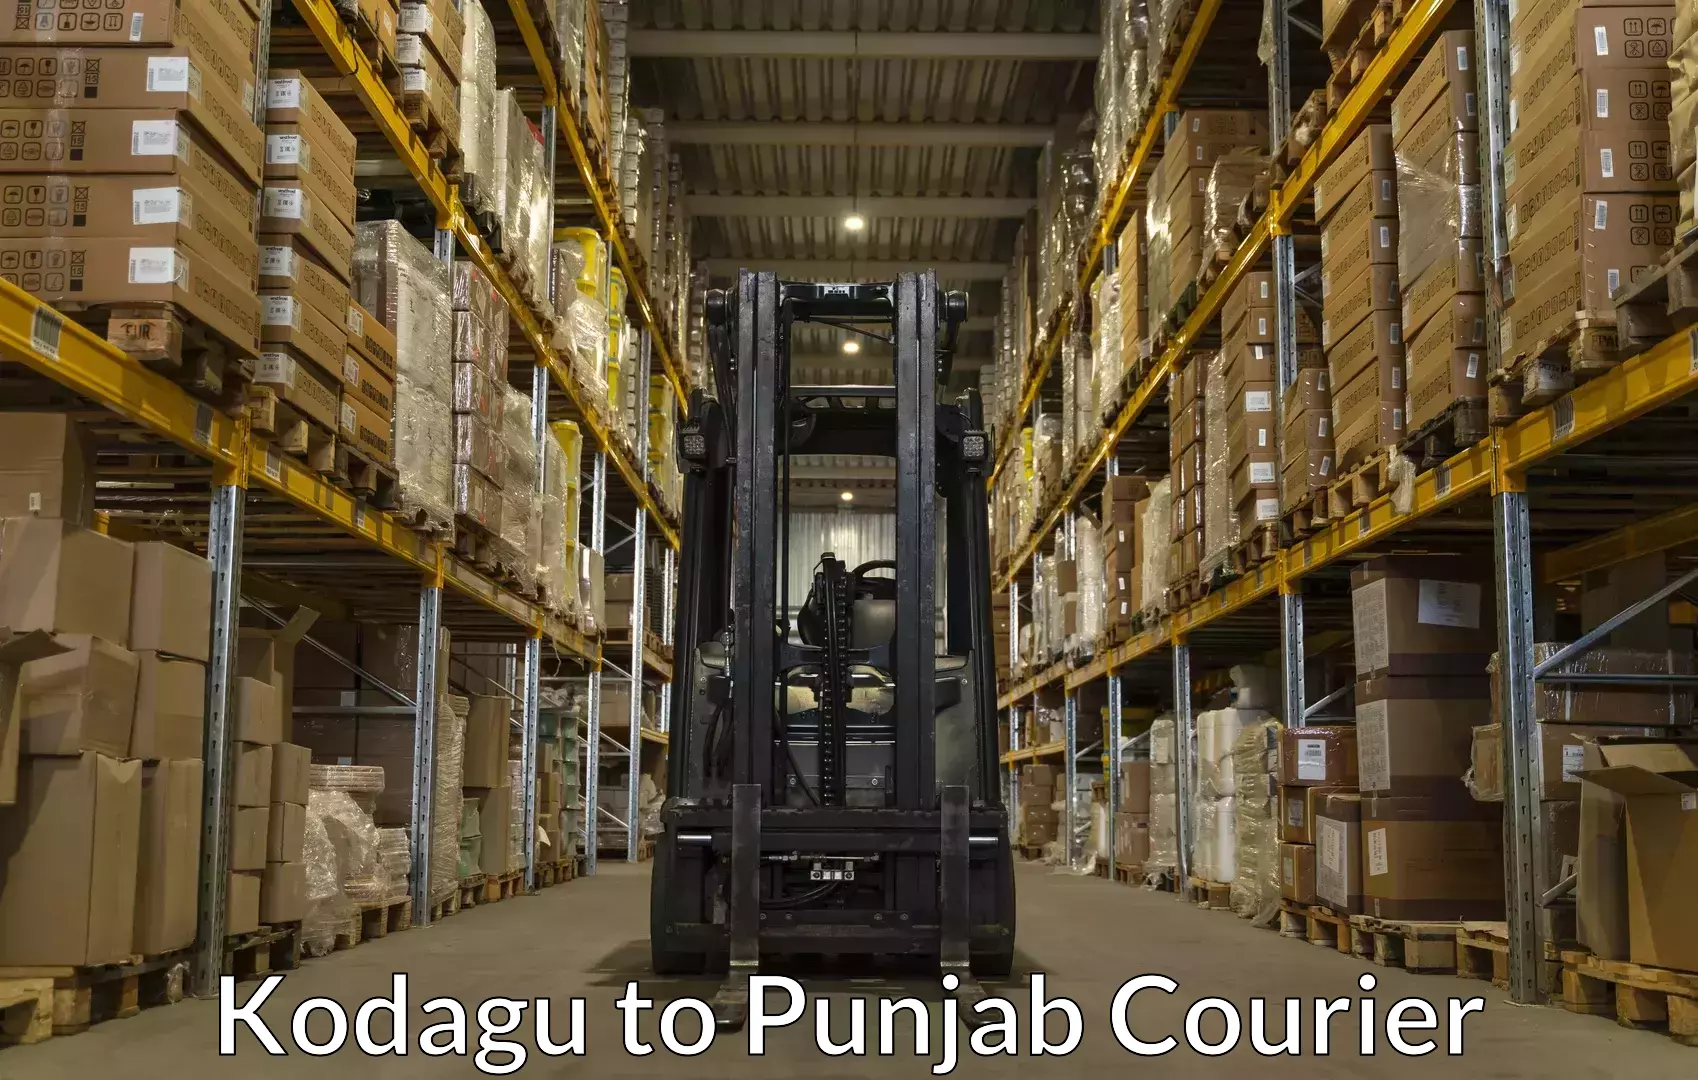 Baggage transport management Kodagu to Punjab